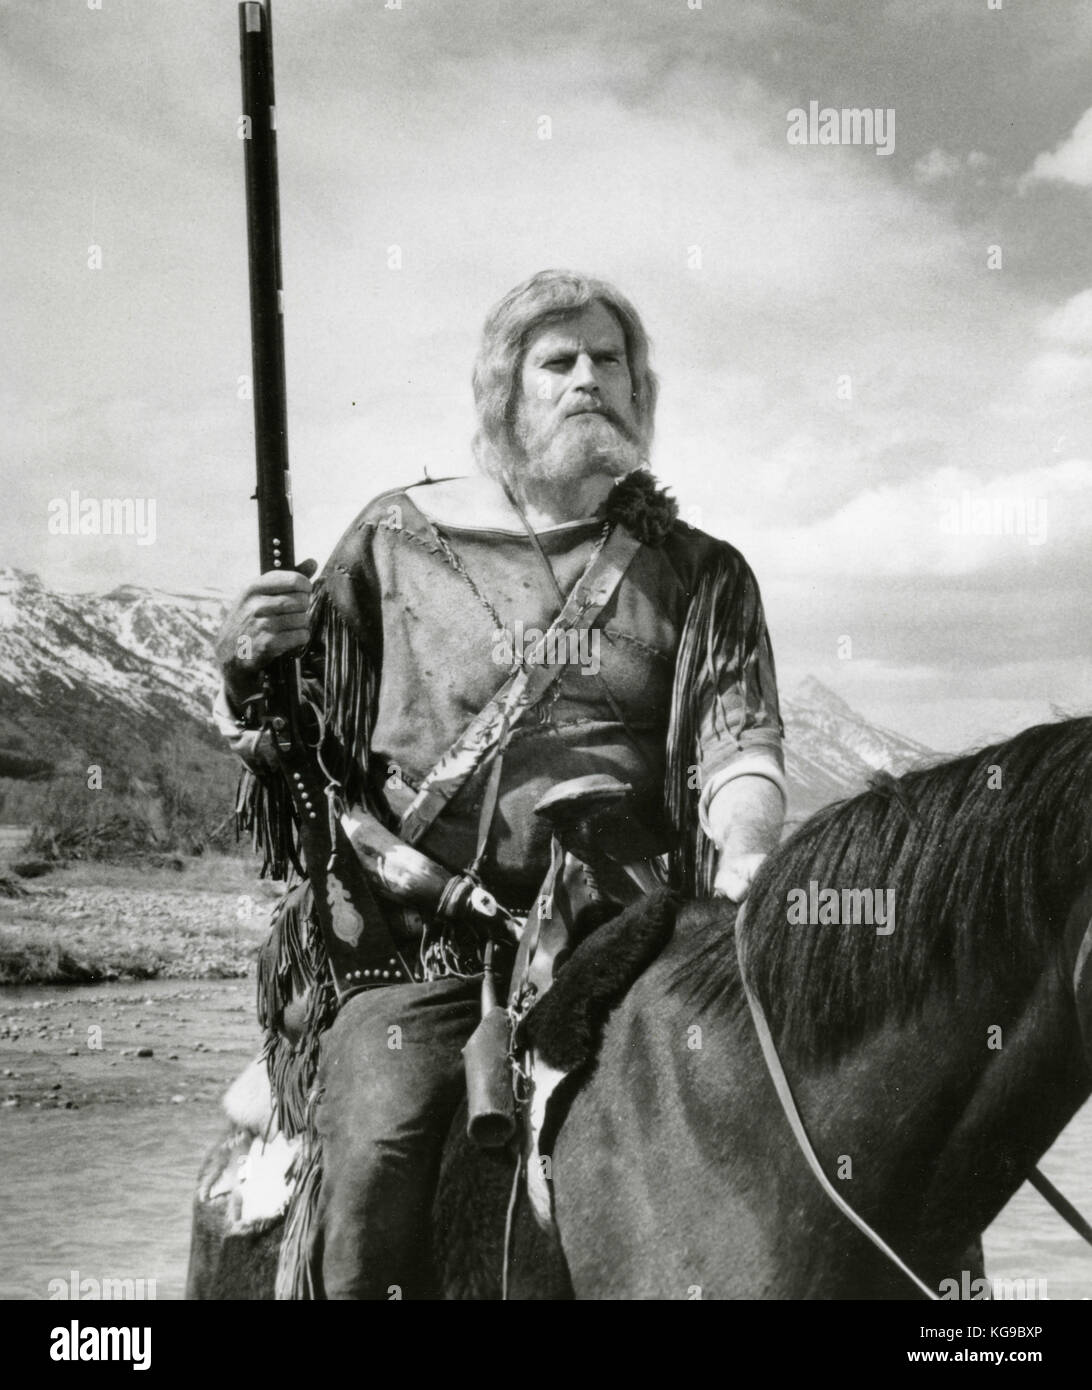 L'acteur américain Charlton Heston dans le film le grand pays, 1958 Banque D'Images